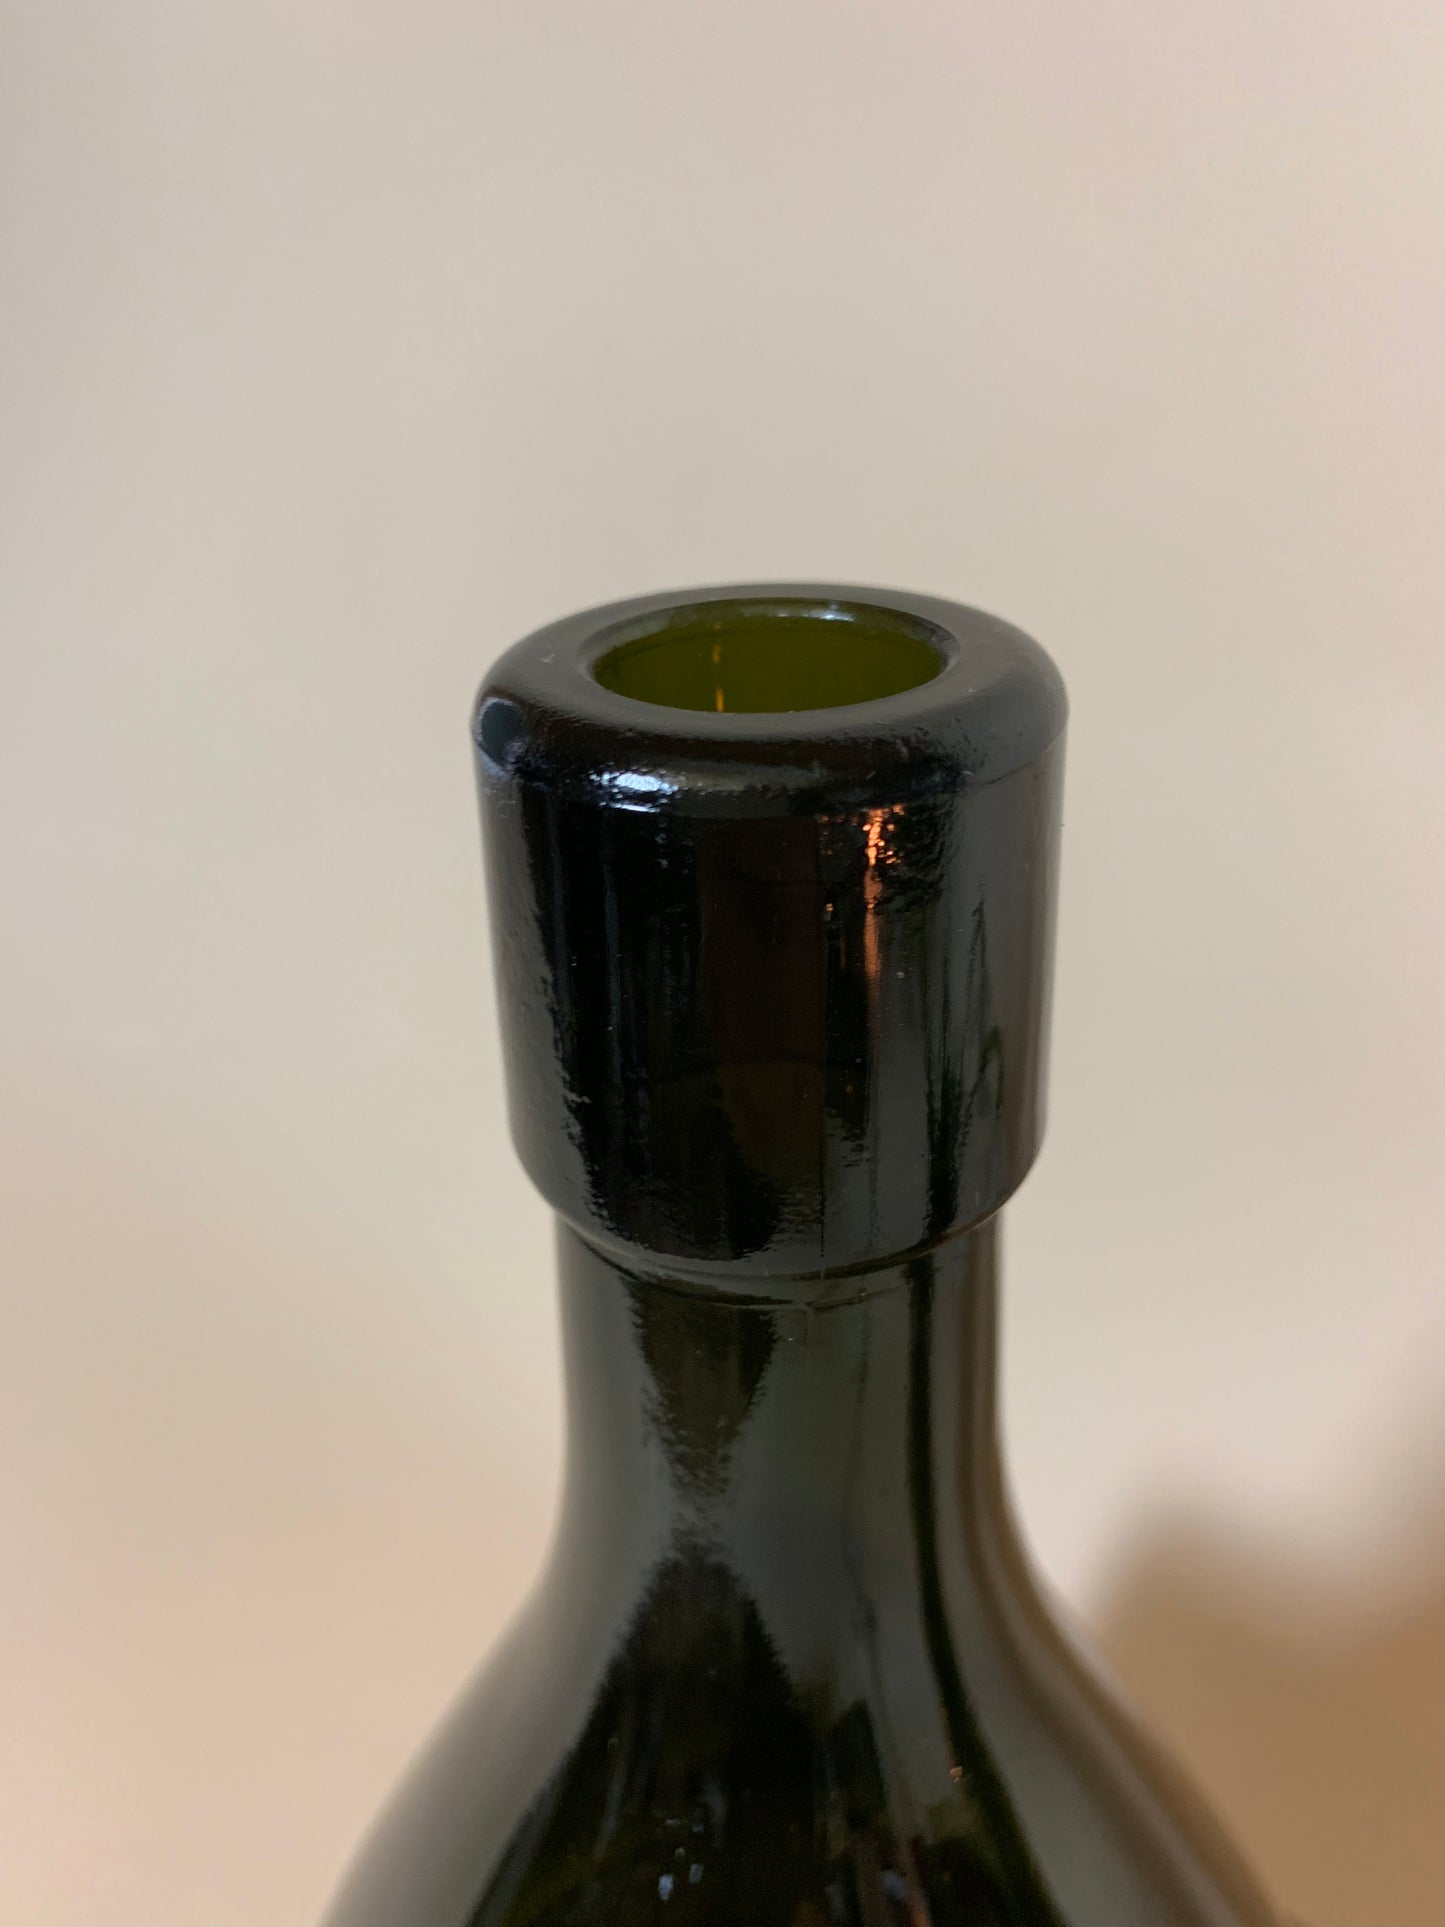 Mørk grøn flaske